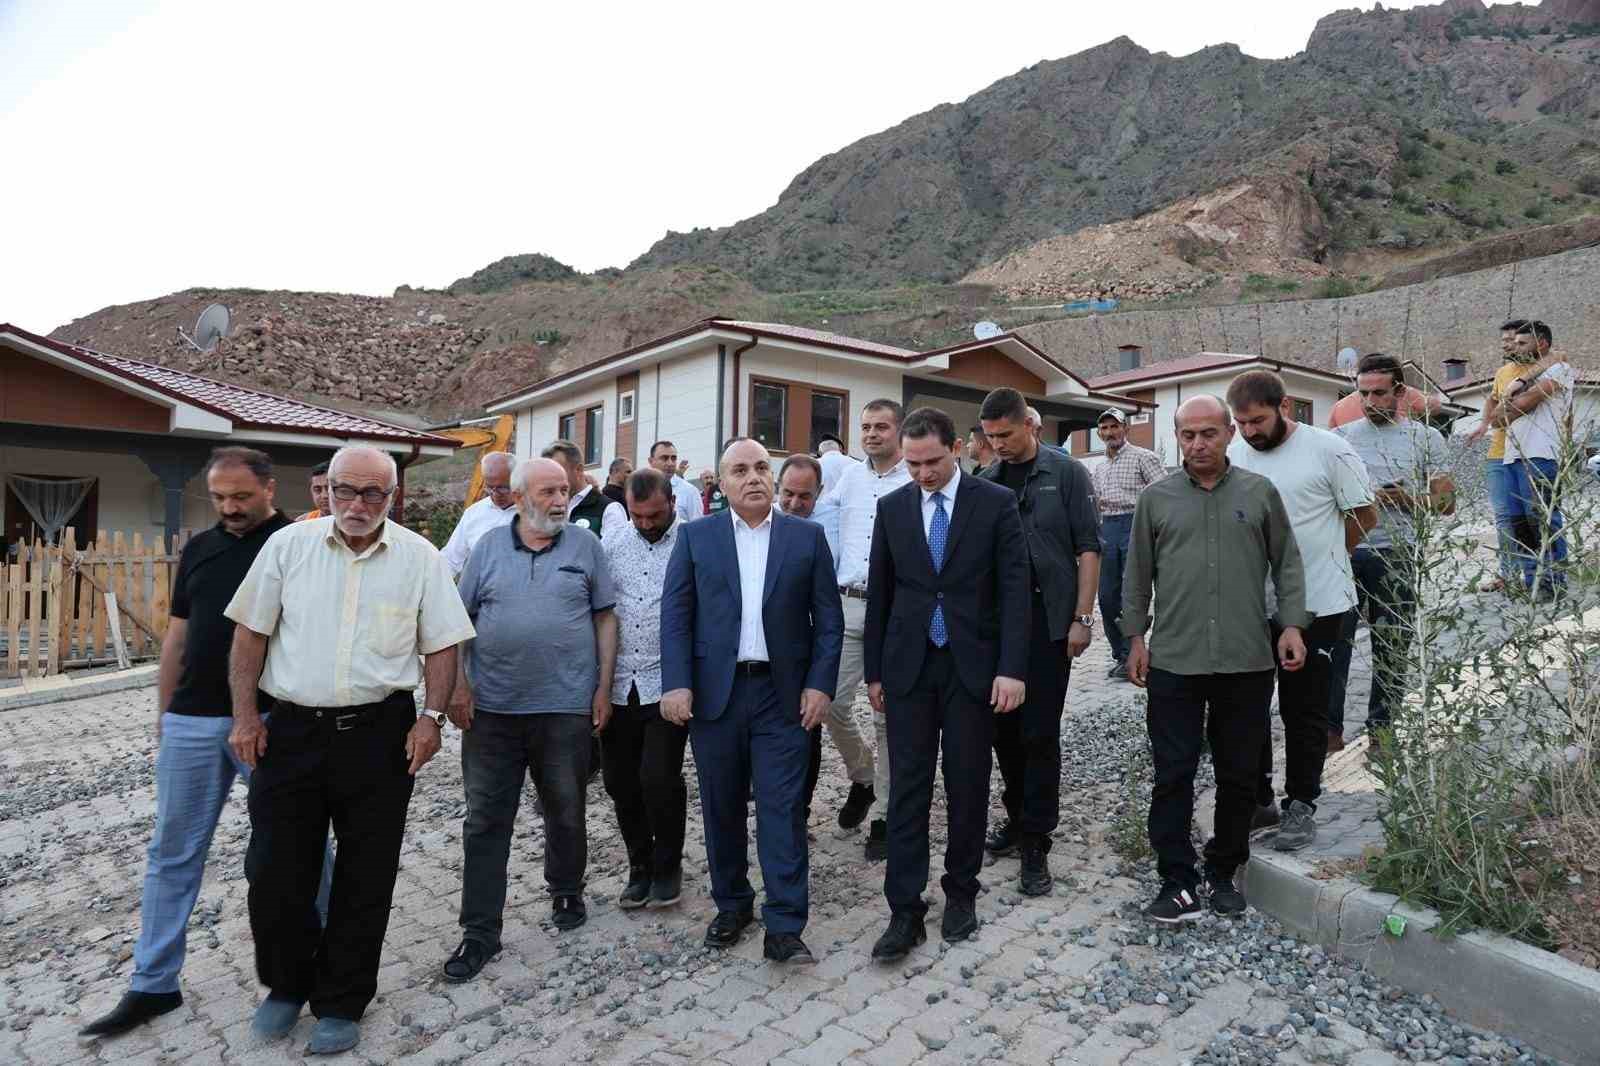 Artvin Valisi Cengiz Ünsal: "Yusufeli Yeniköy Köyü’nde kaya düşmesi tehdidi nedeniyle 5 ev tedbir amaçlı boşaltıldı"